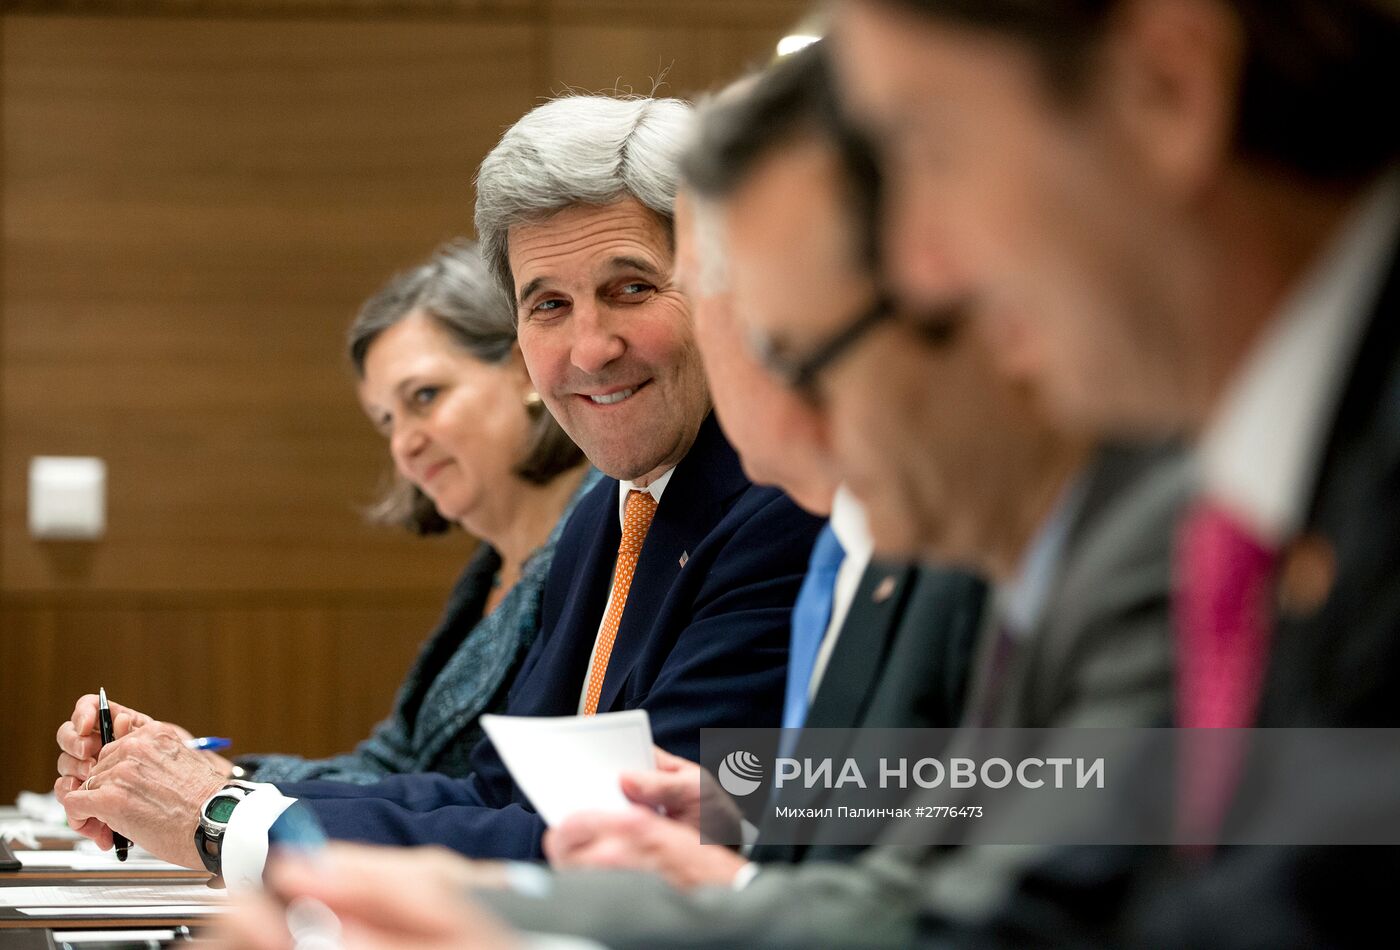 Президент Украины П. Порошенко встретился с вице-президентом США Д. Байденом и госсекретарем США Д. Керри